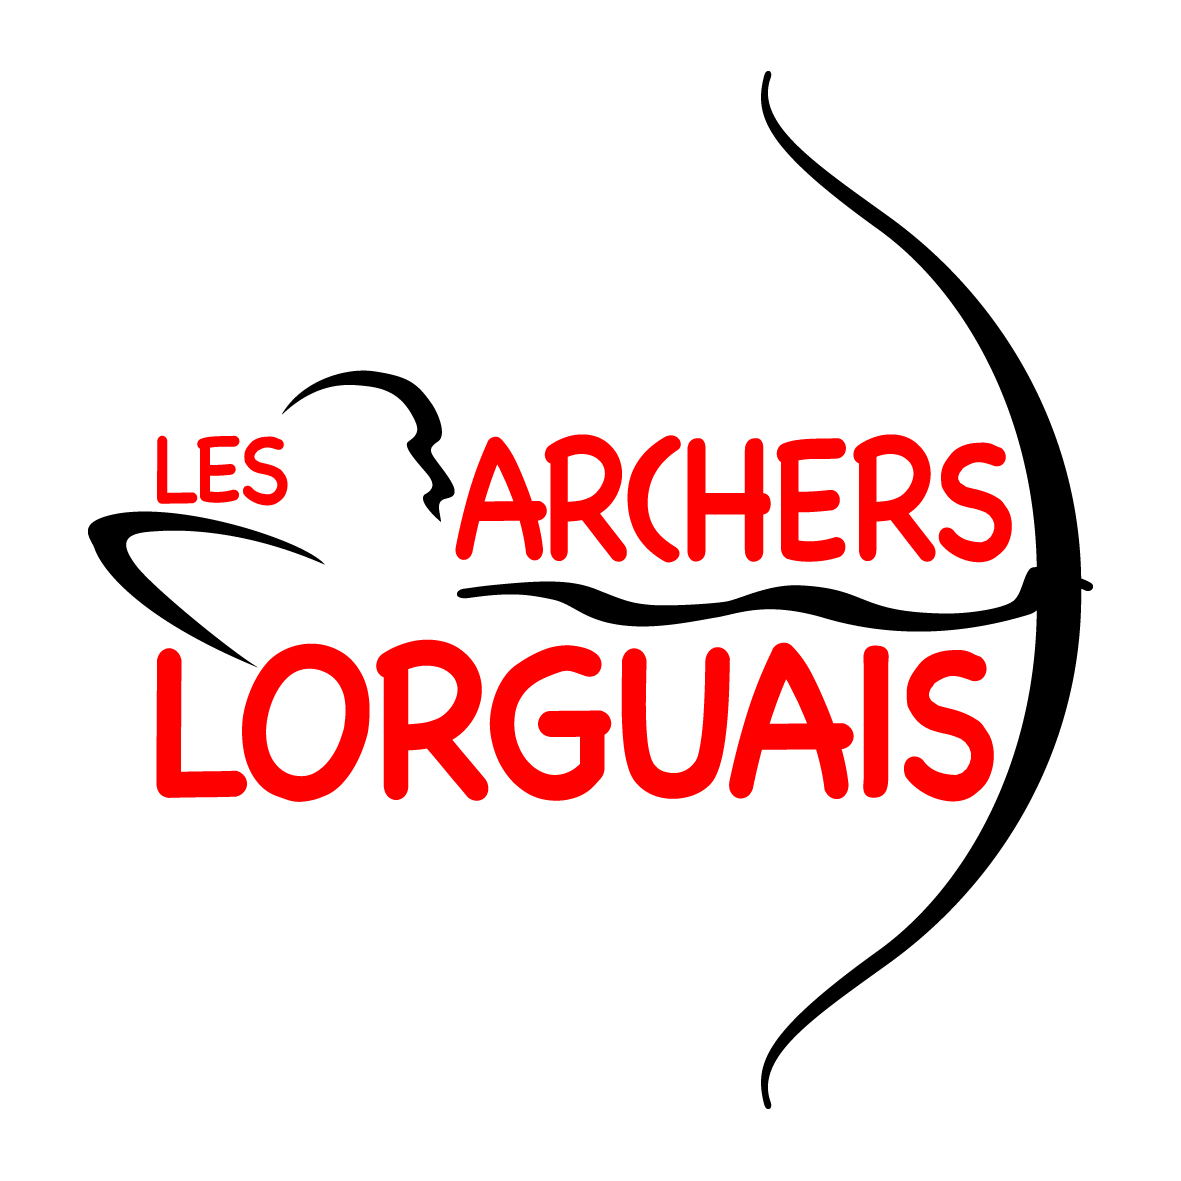 Les archers lorguais